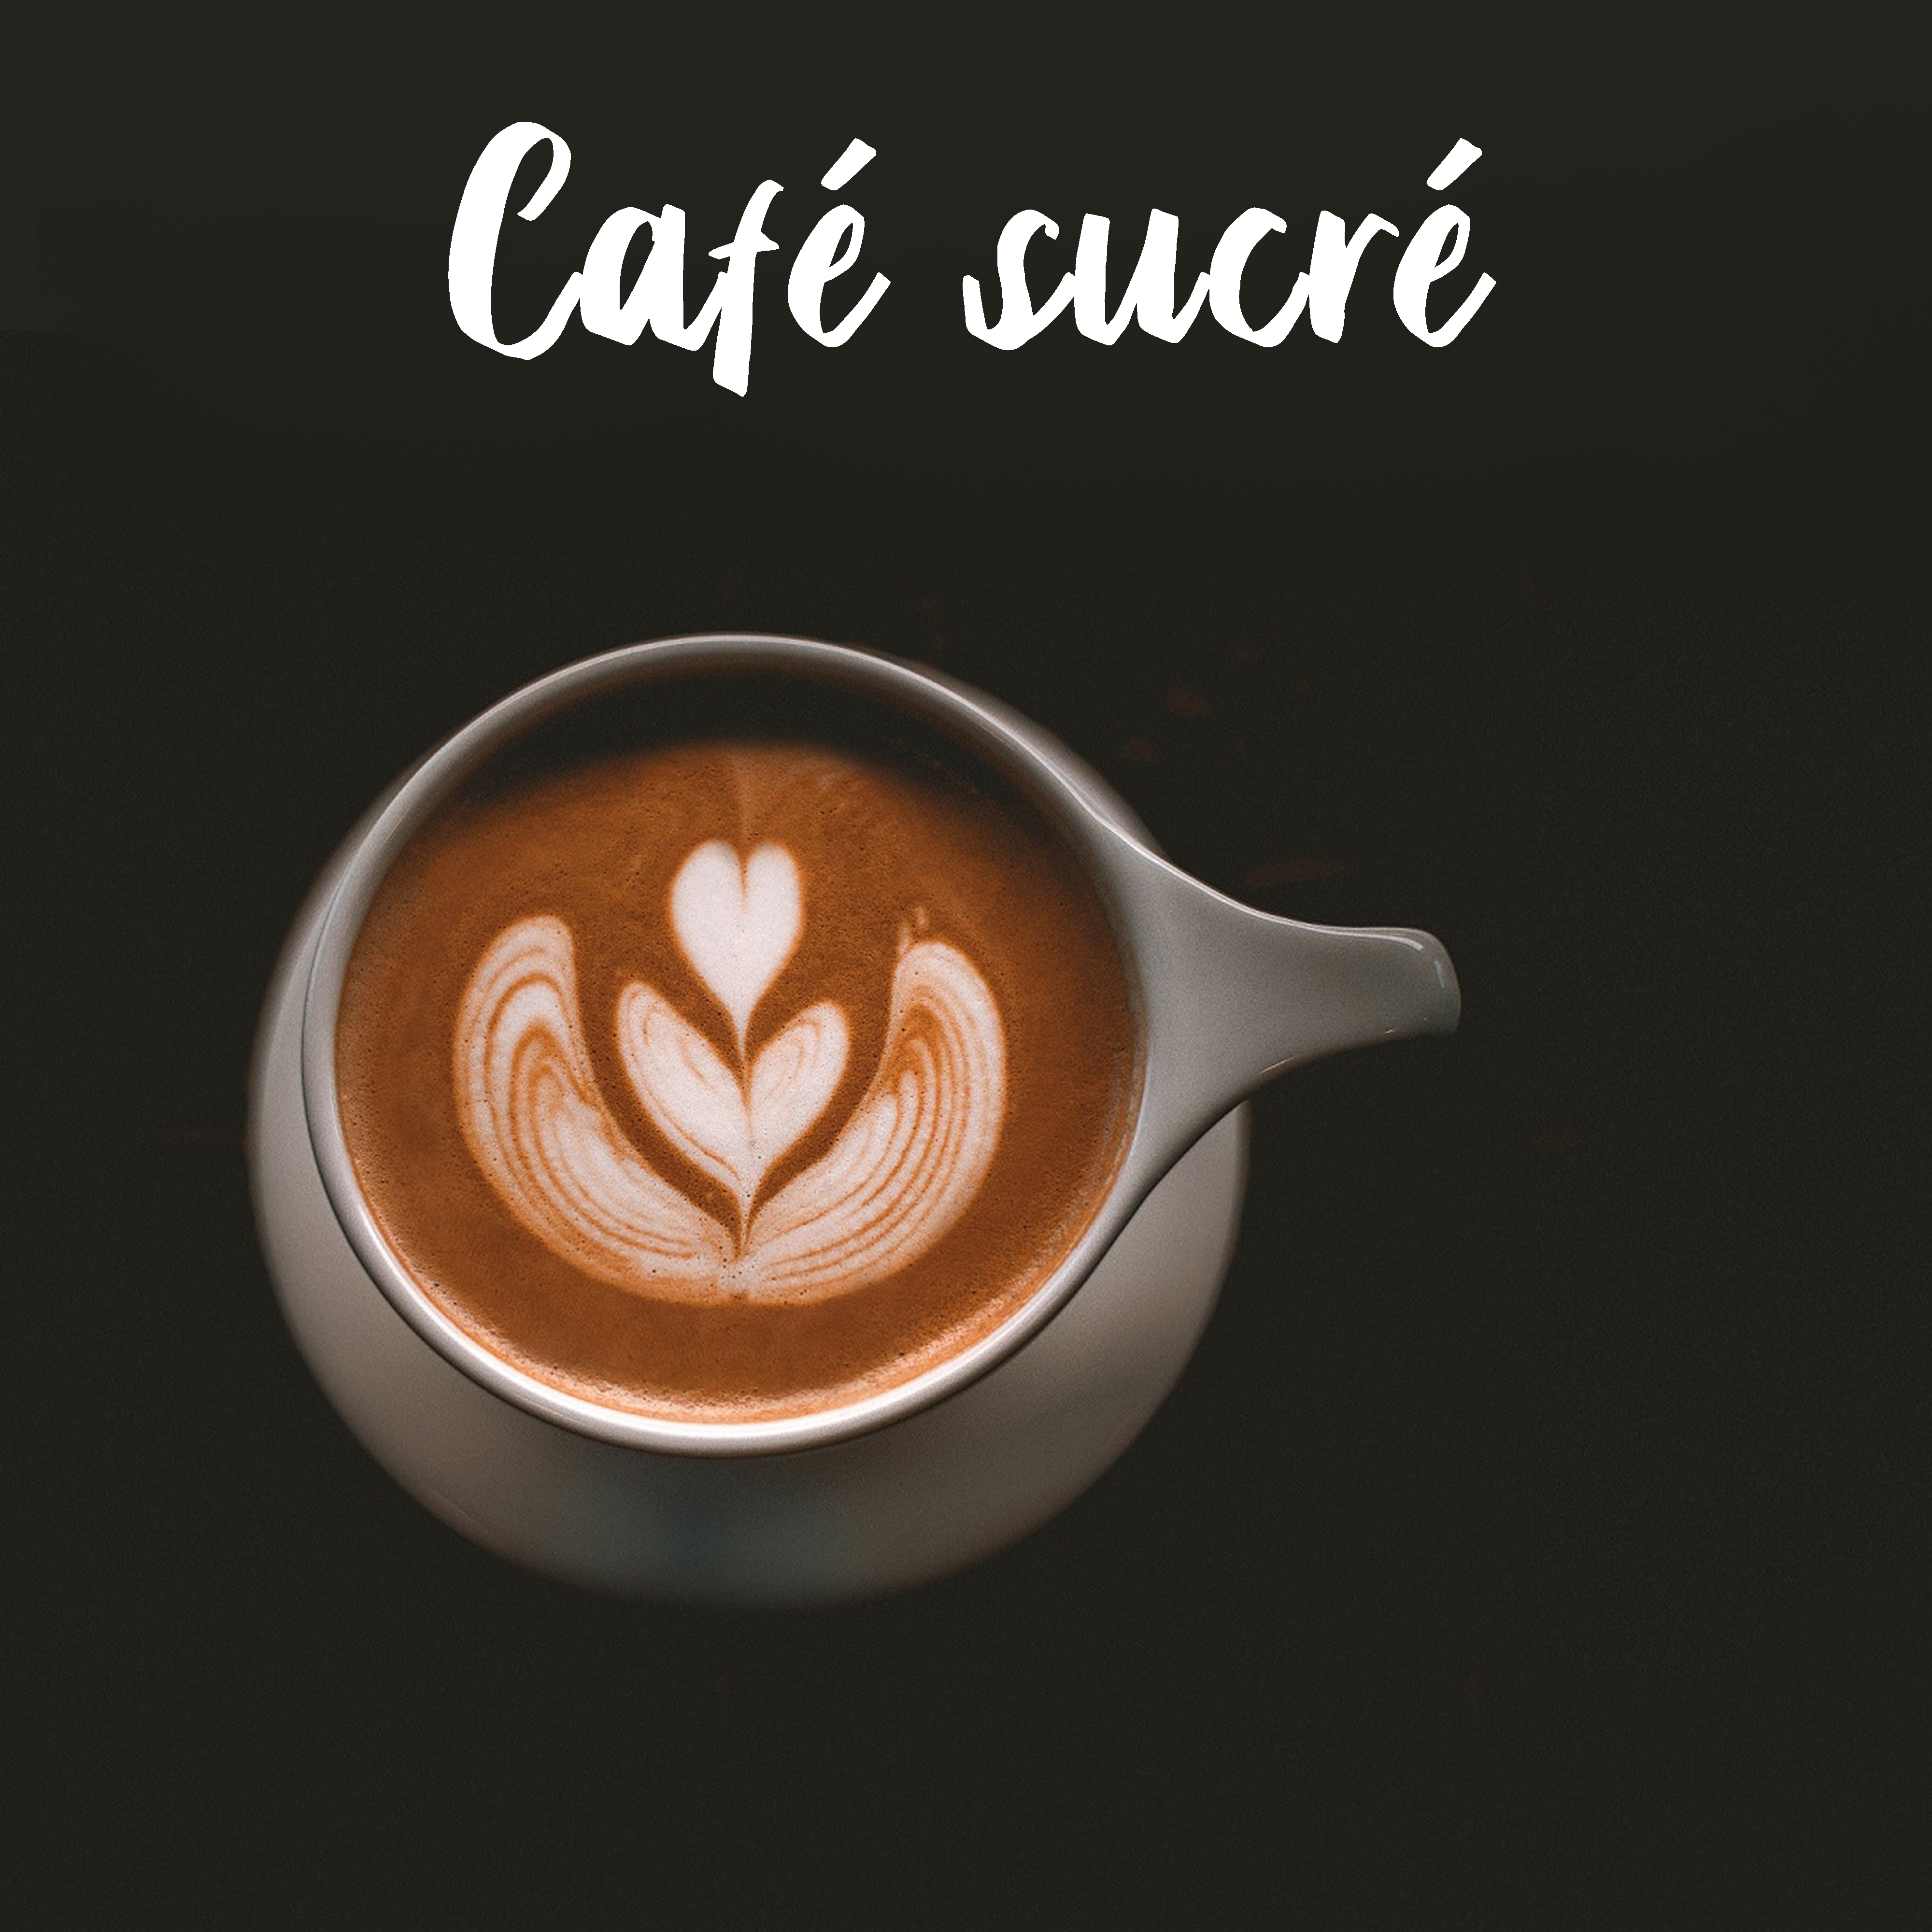 Café sucré